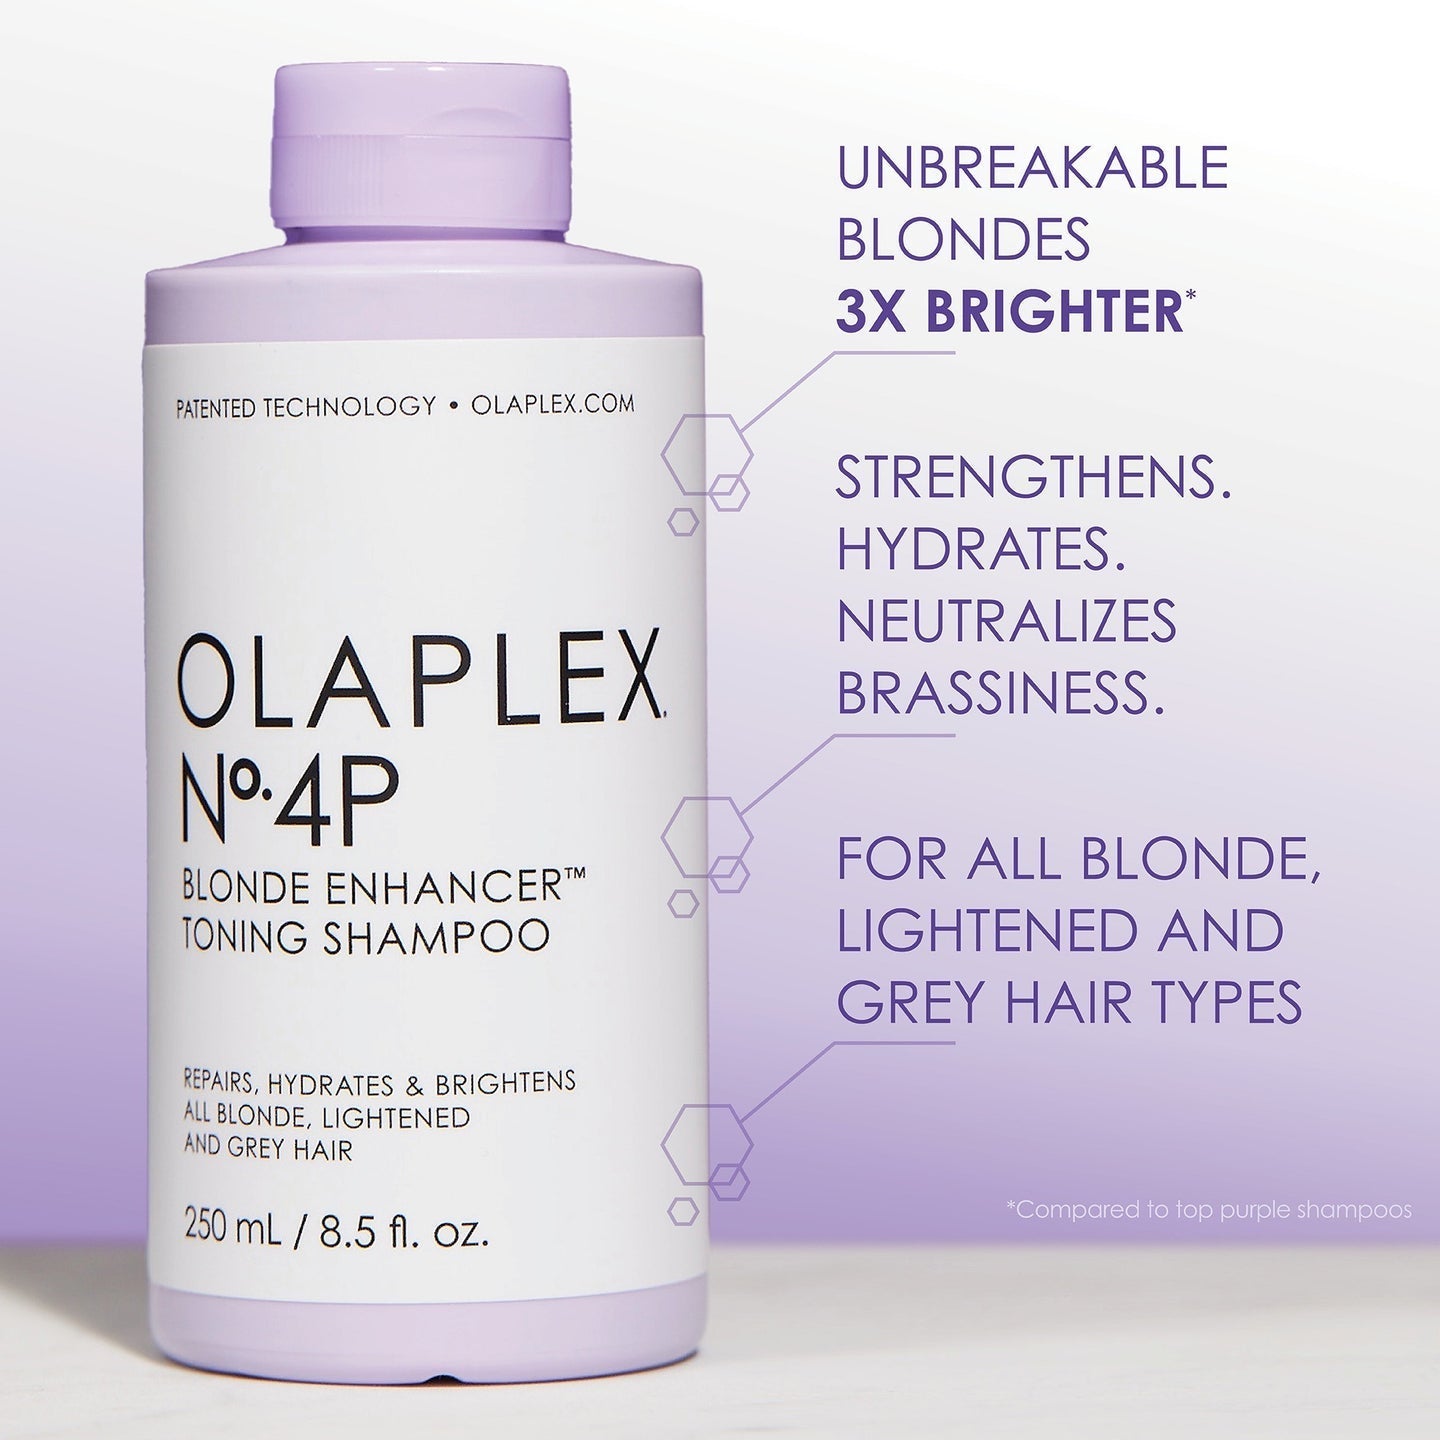 Olaplex Nº.4 P Blonde Enhancer Toning Shampoo 250ml - IZZAT DAOUK Lebanon